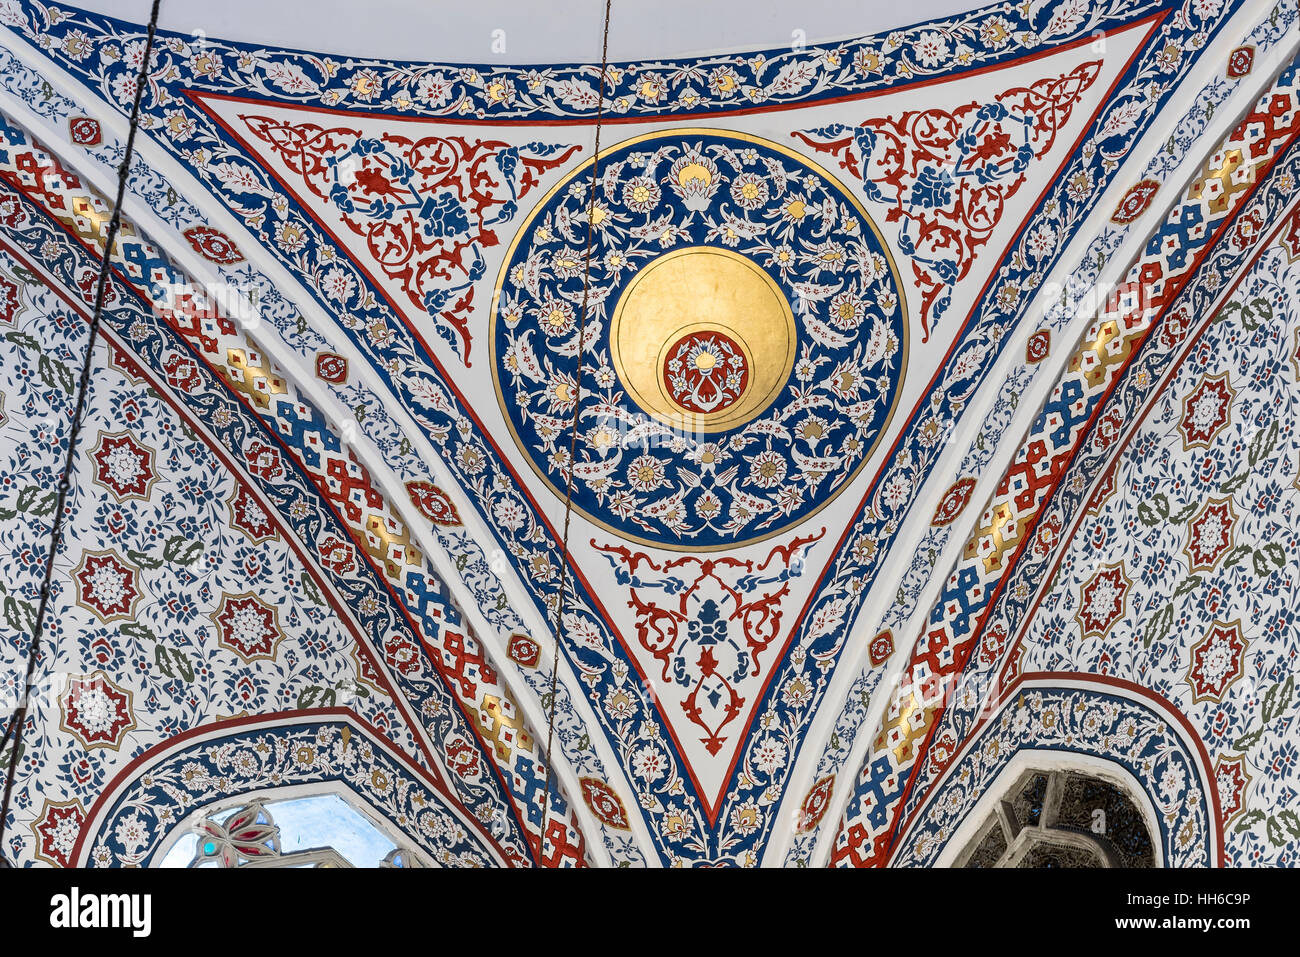 Il nuovo valido? La Moschea del Sultano è un ottomano moschea imperiale si trova nel quartiere Eminonu di Istanbul, Turchia. Esso è situato sul Golden Horn, all'estremità meridionale del Ponte di Galata, ed è uno dei più famosi punti di riferimento architettonici di Istanbul. Foto Stock